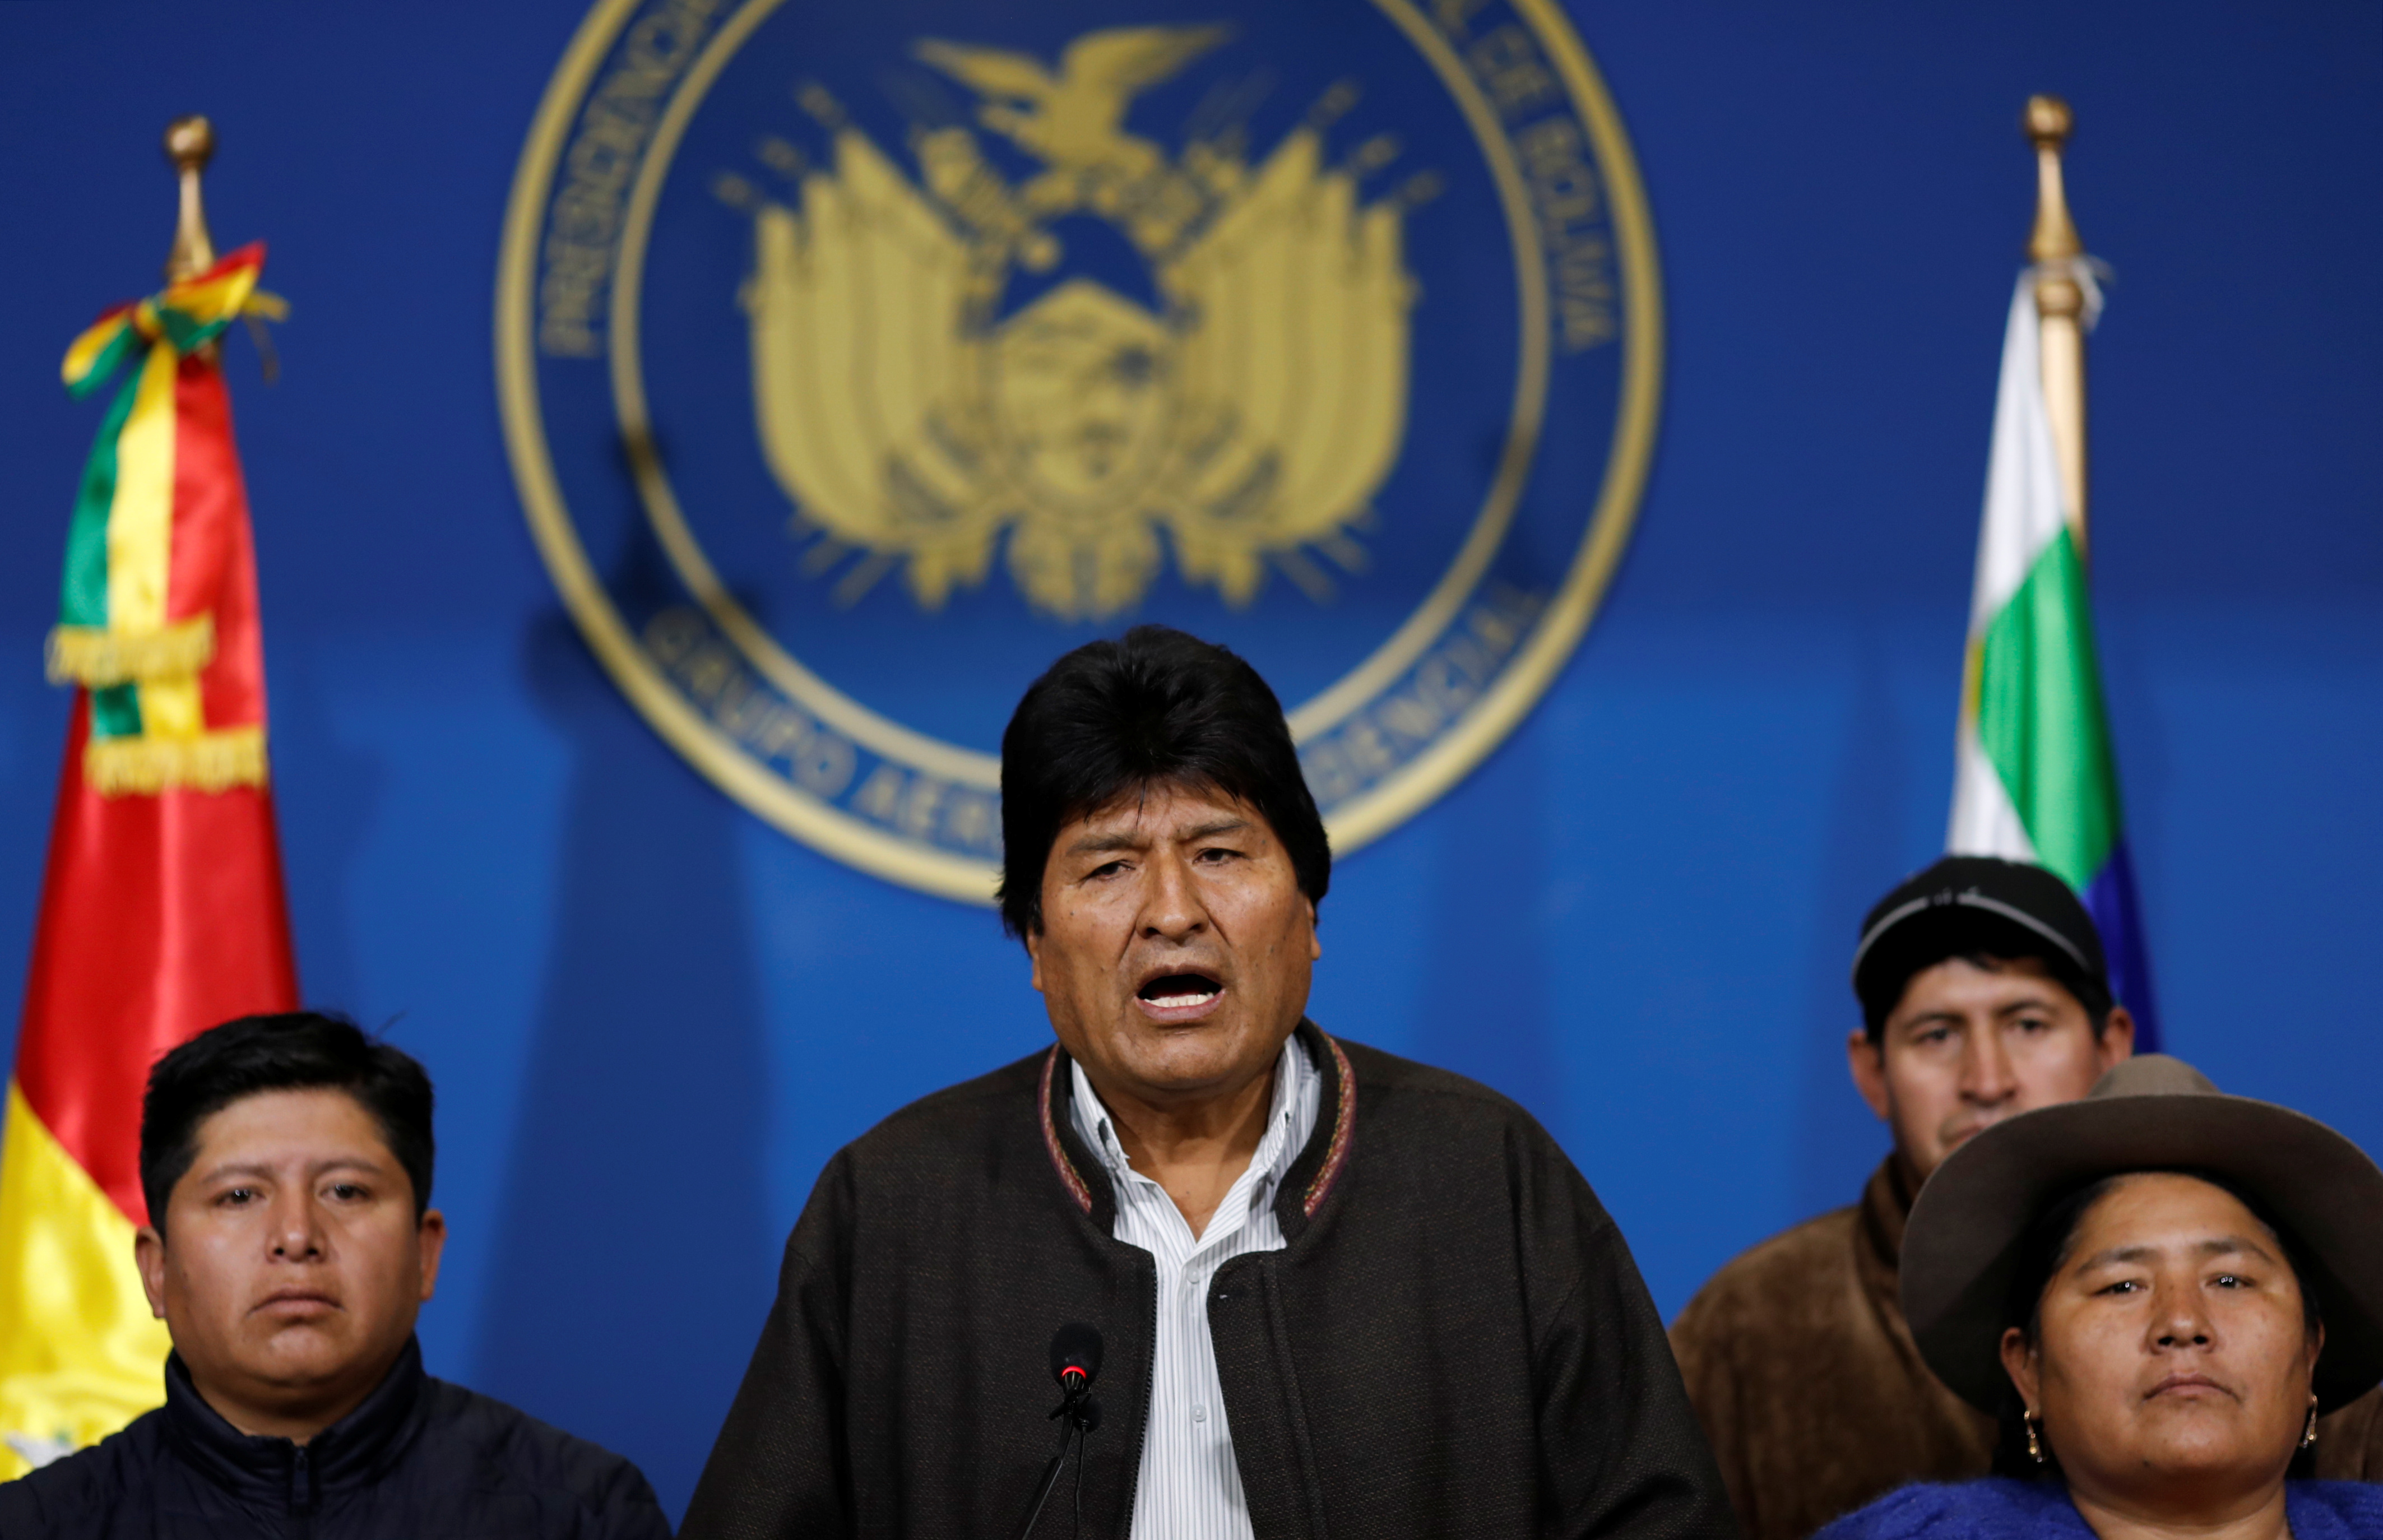 Evo Morales anuncia nuevas elecciones generales en Bolivia (Video)